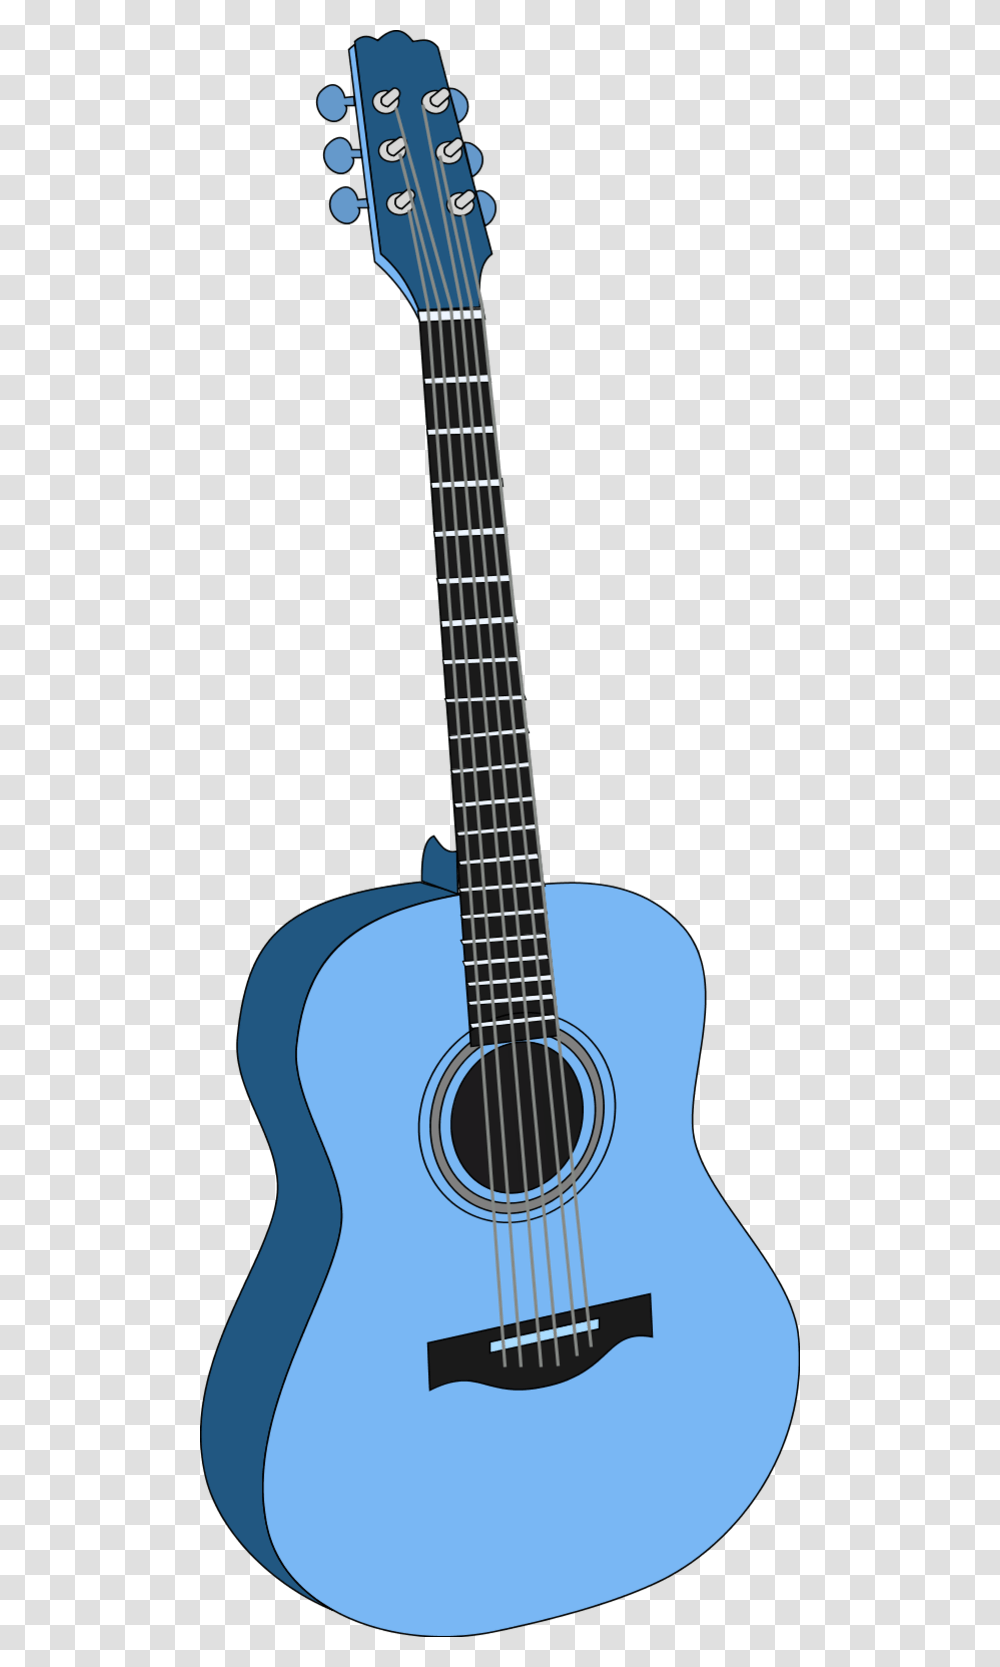 Guitar Clipart Blue Object Blue Guitar Clipart, Leisure Activities, Musical Instrument, Bass Guitar Transparent Png